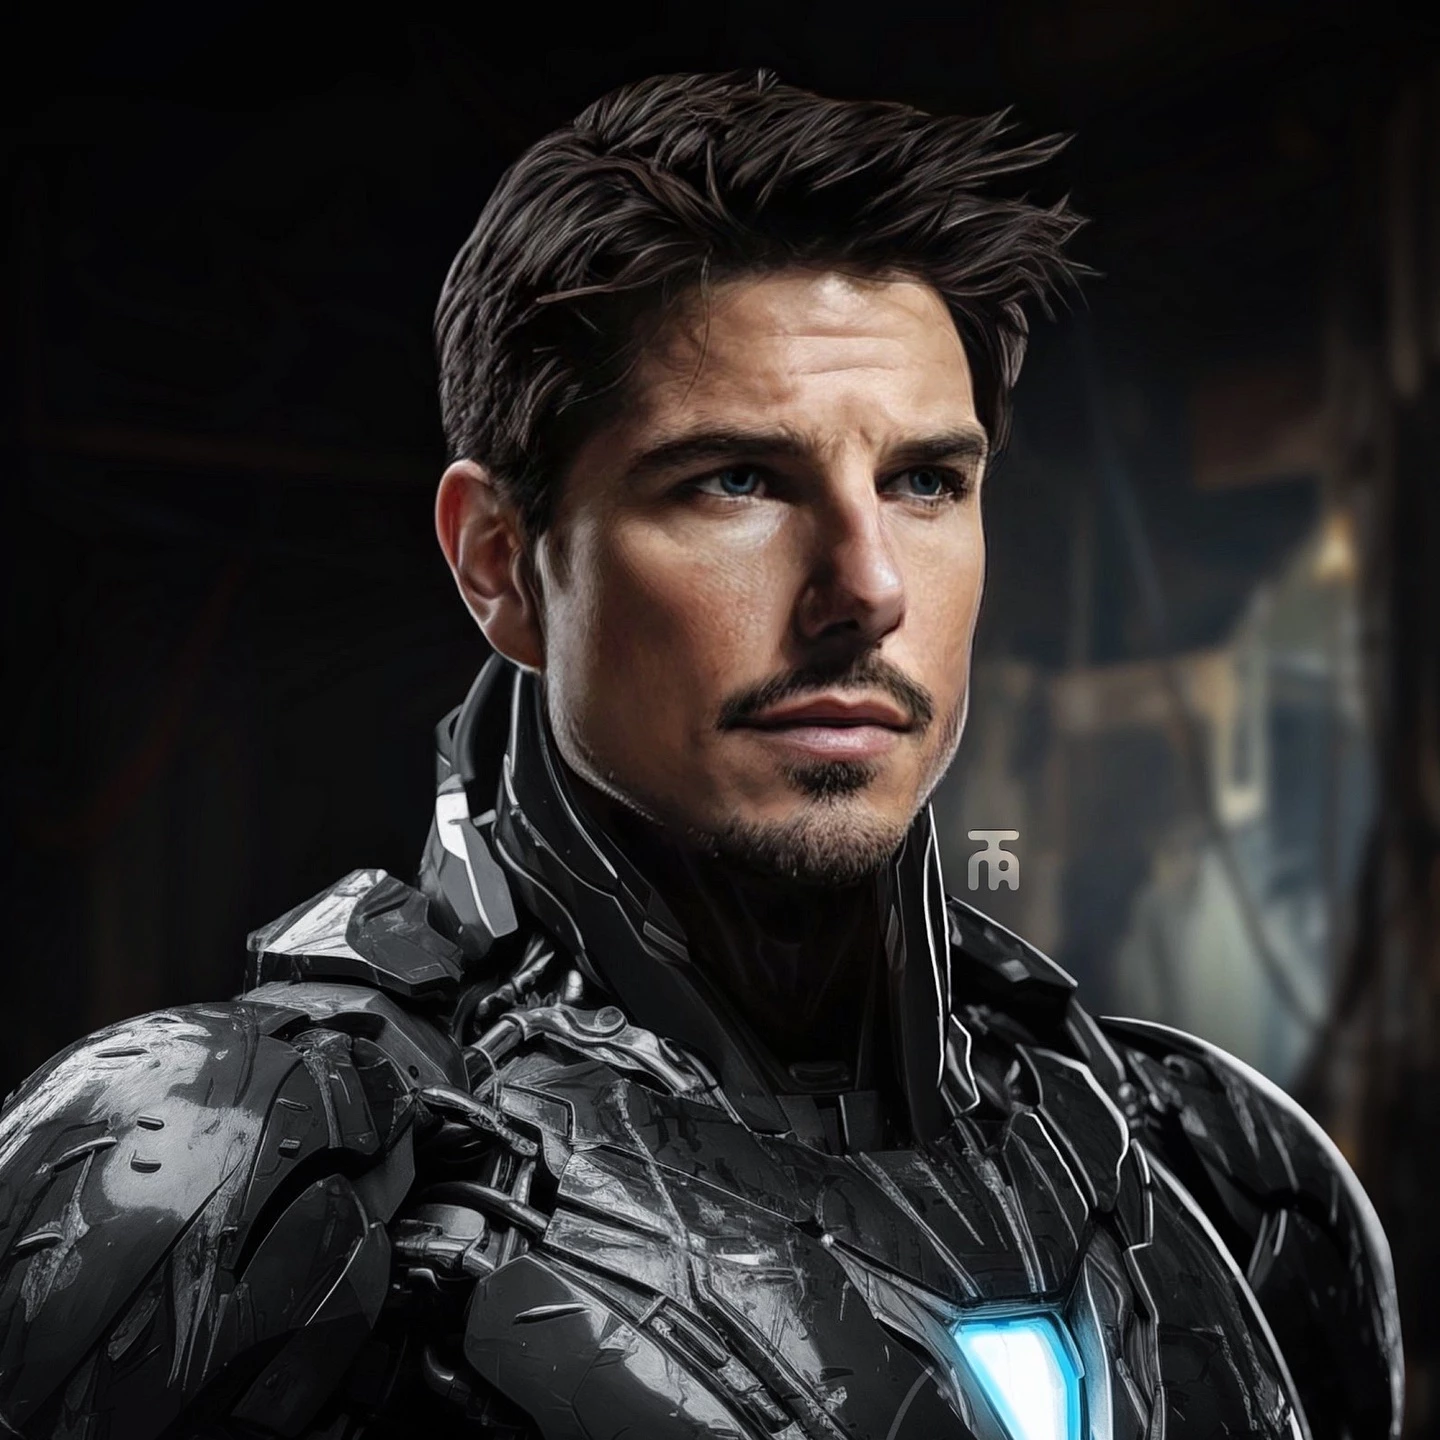 Tom Cruise As Iron Man